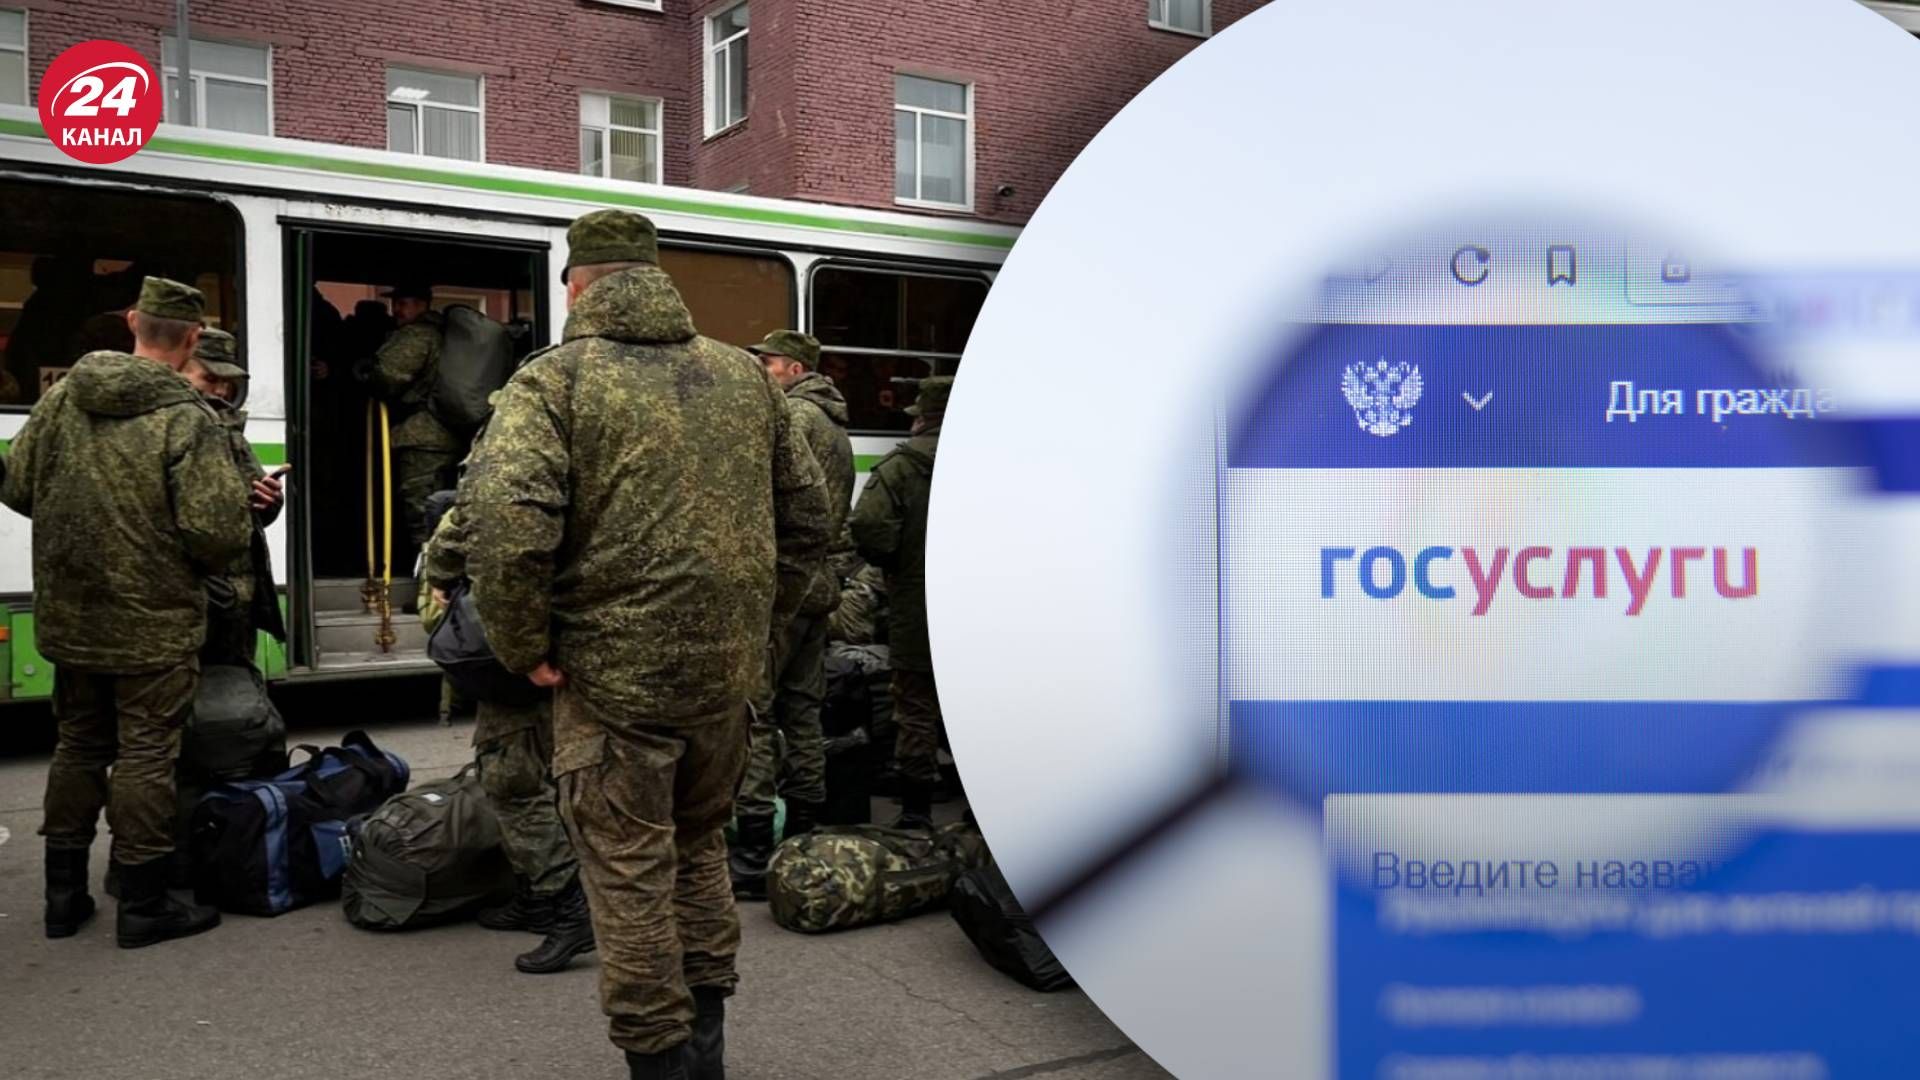 В России запретили удалять аккаунт из Госуслуг - будут отправлять электронные повестки